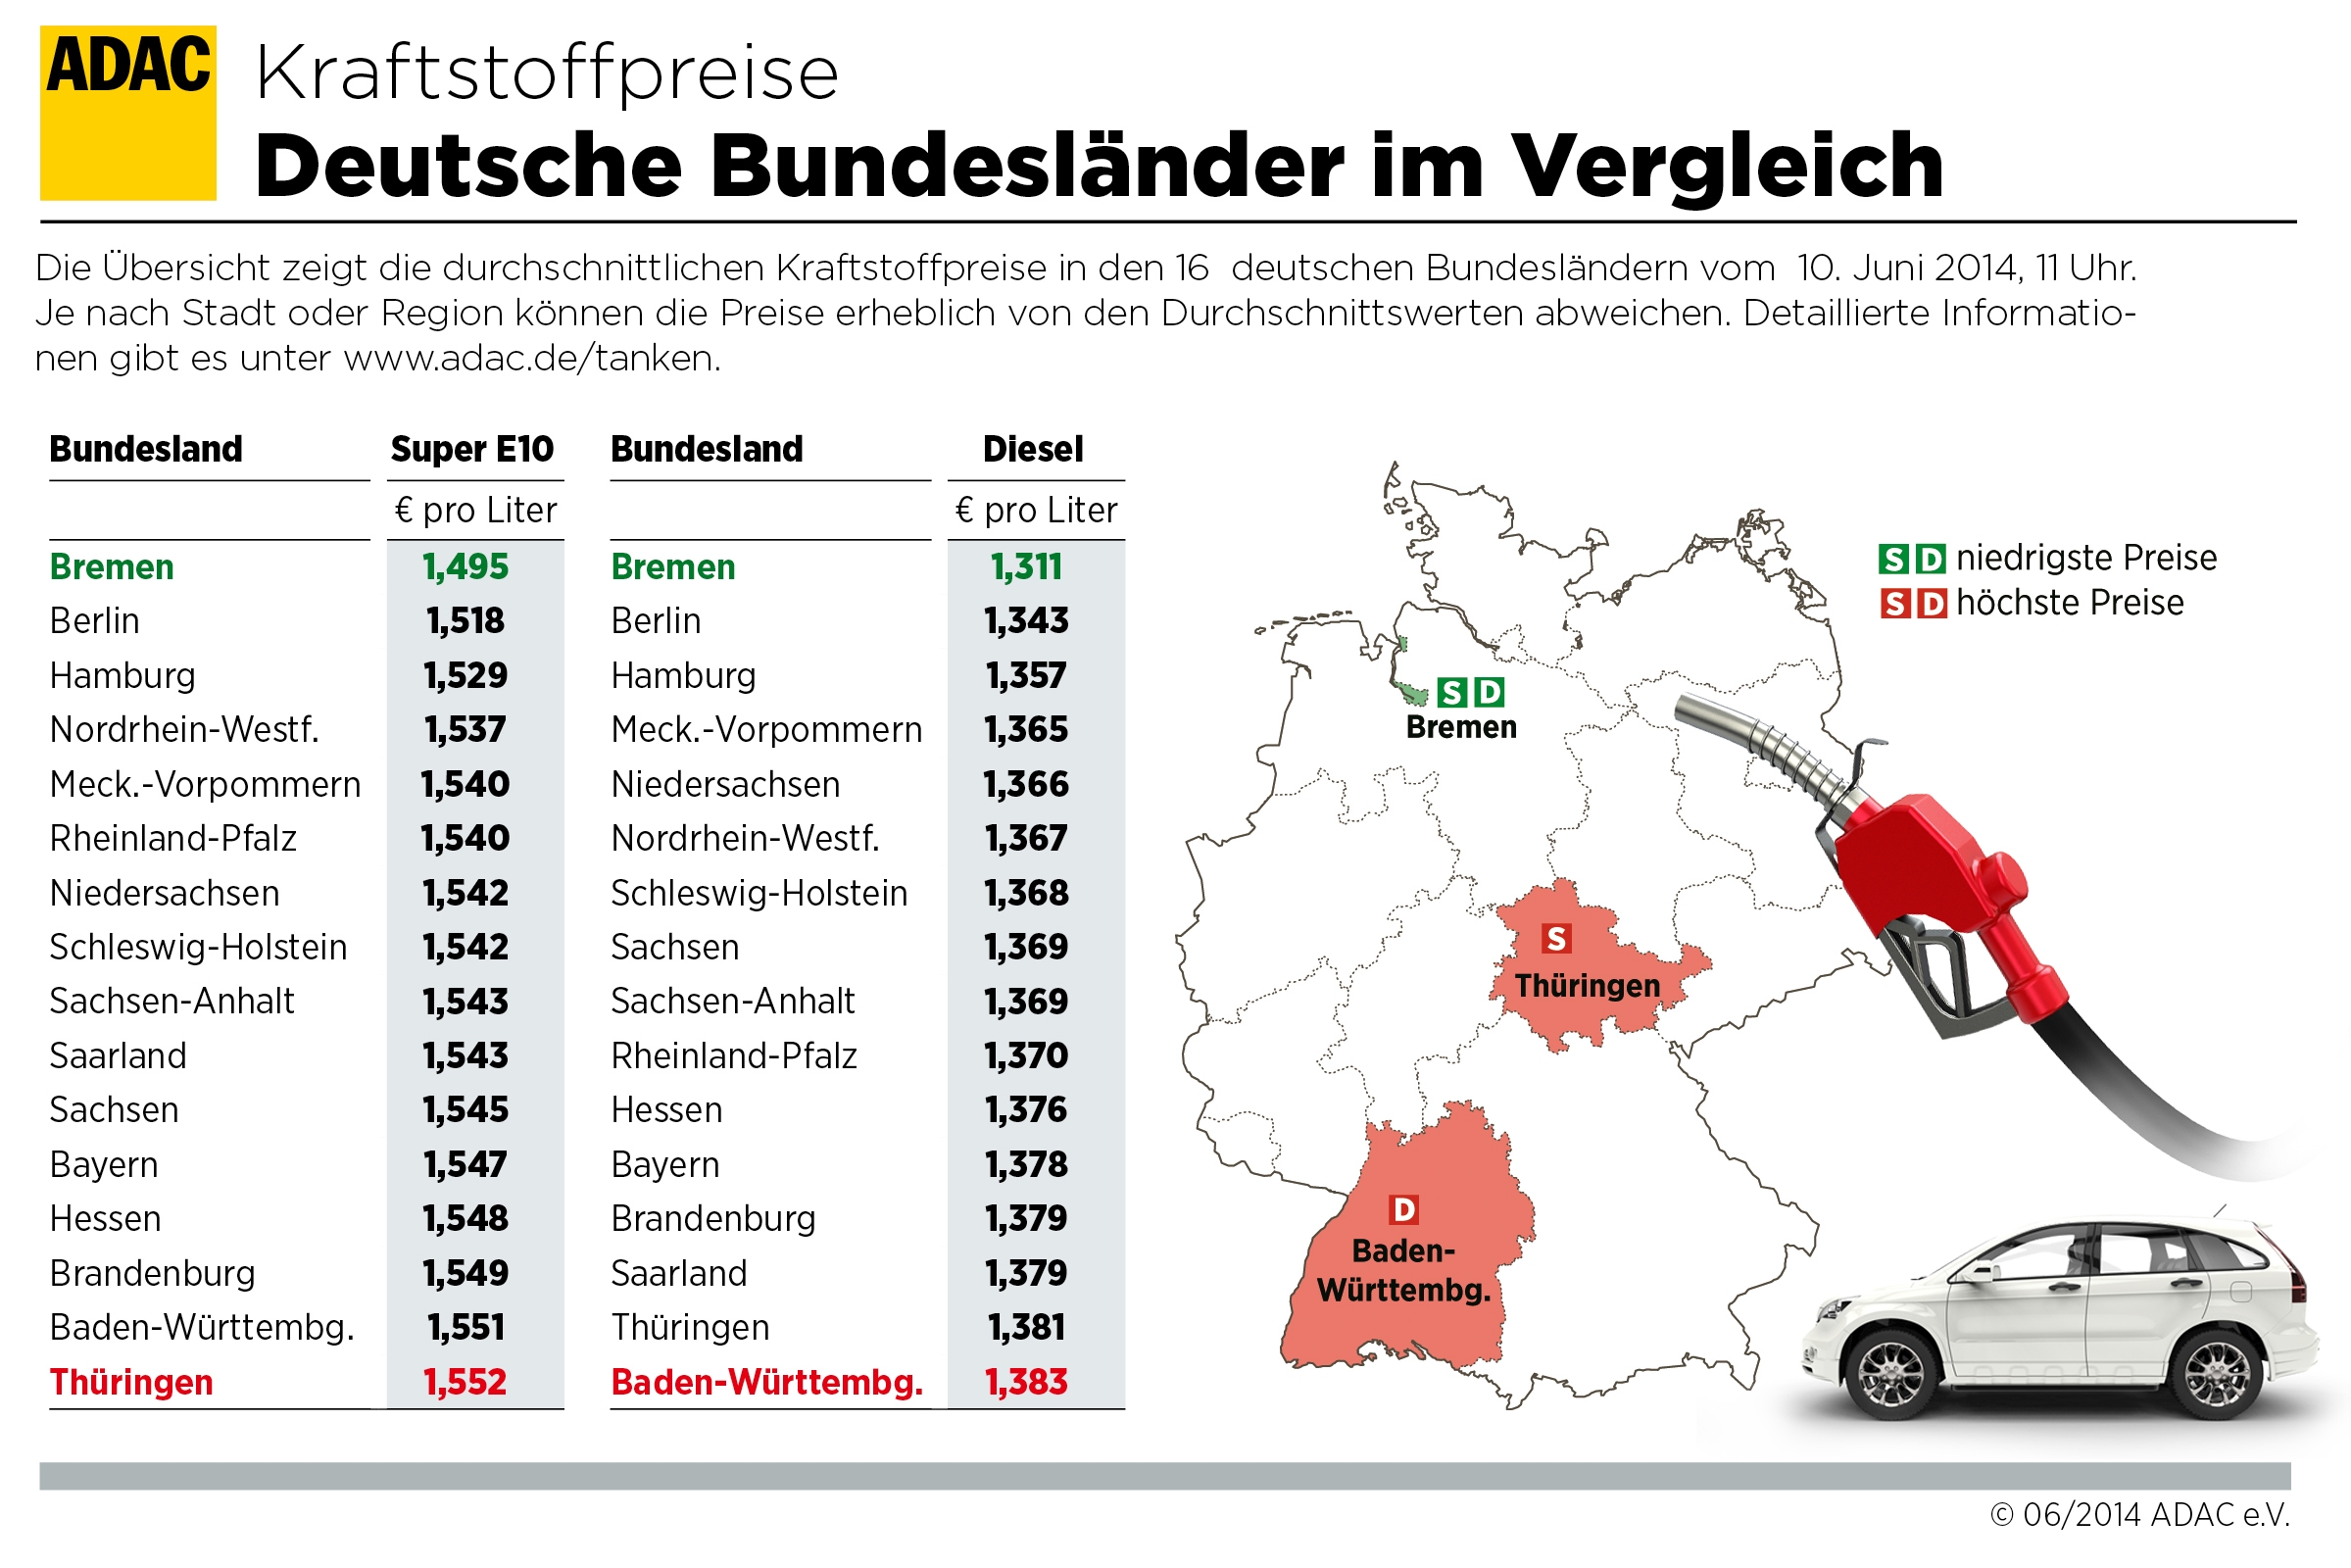 Tanken in Baden-Württemberg und Thüringen am teuersten